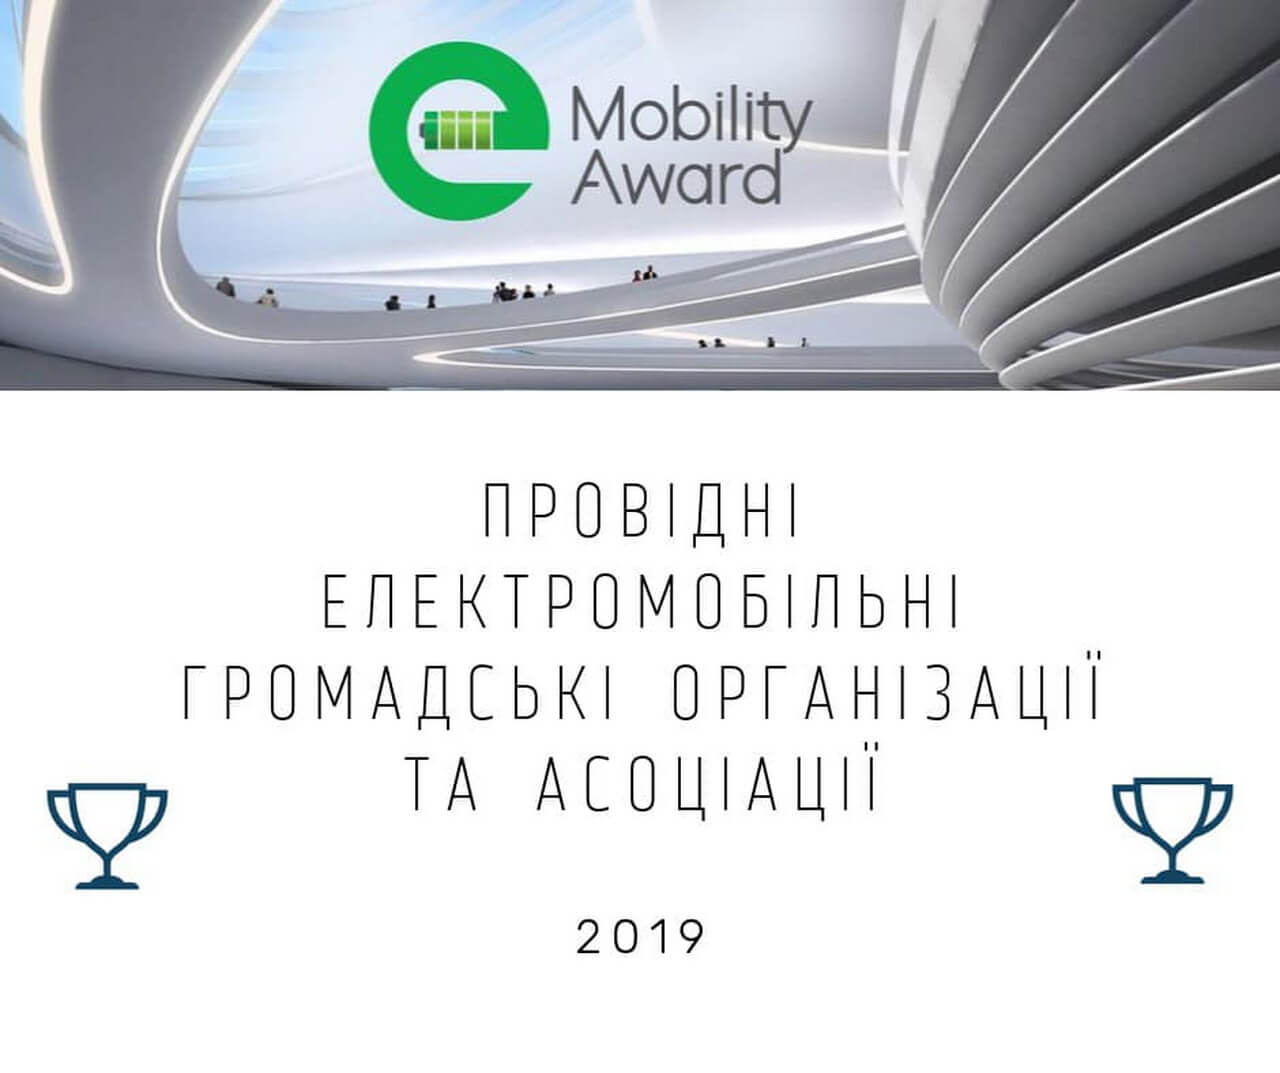 e-Mobility Award: «Ведущие украинские общественные организации и ассоциации»